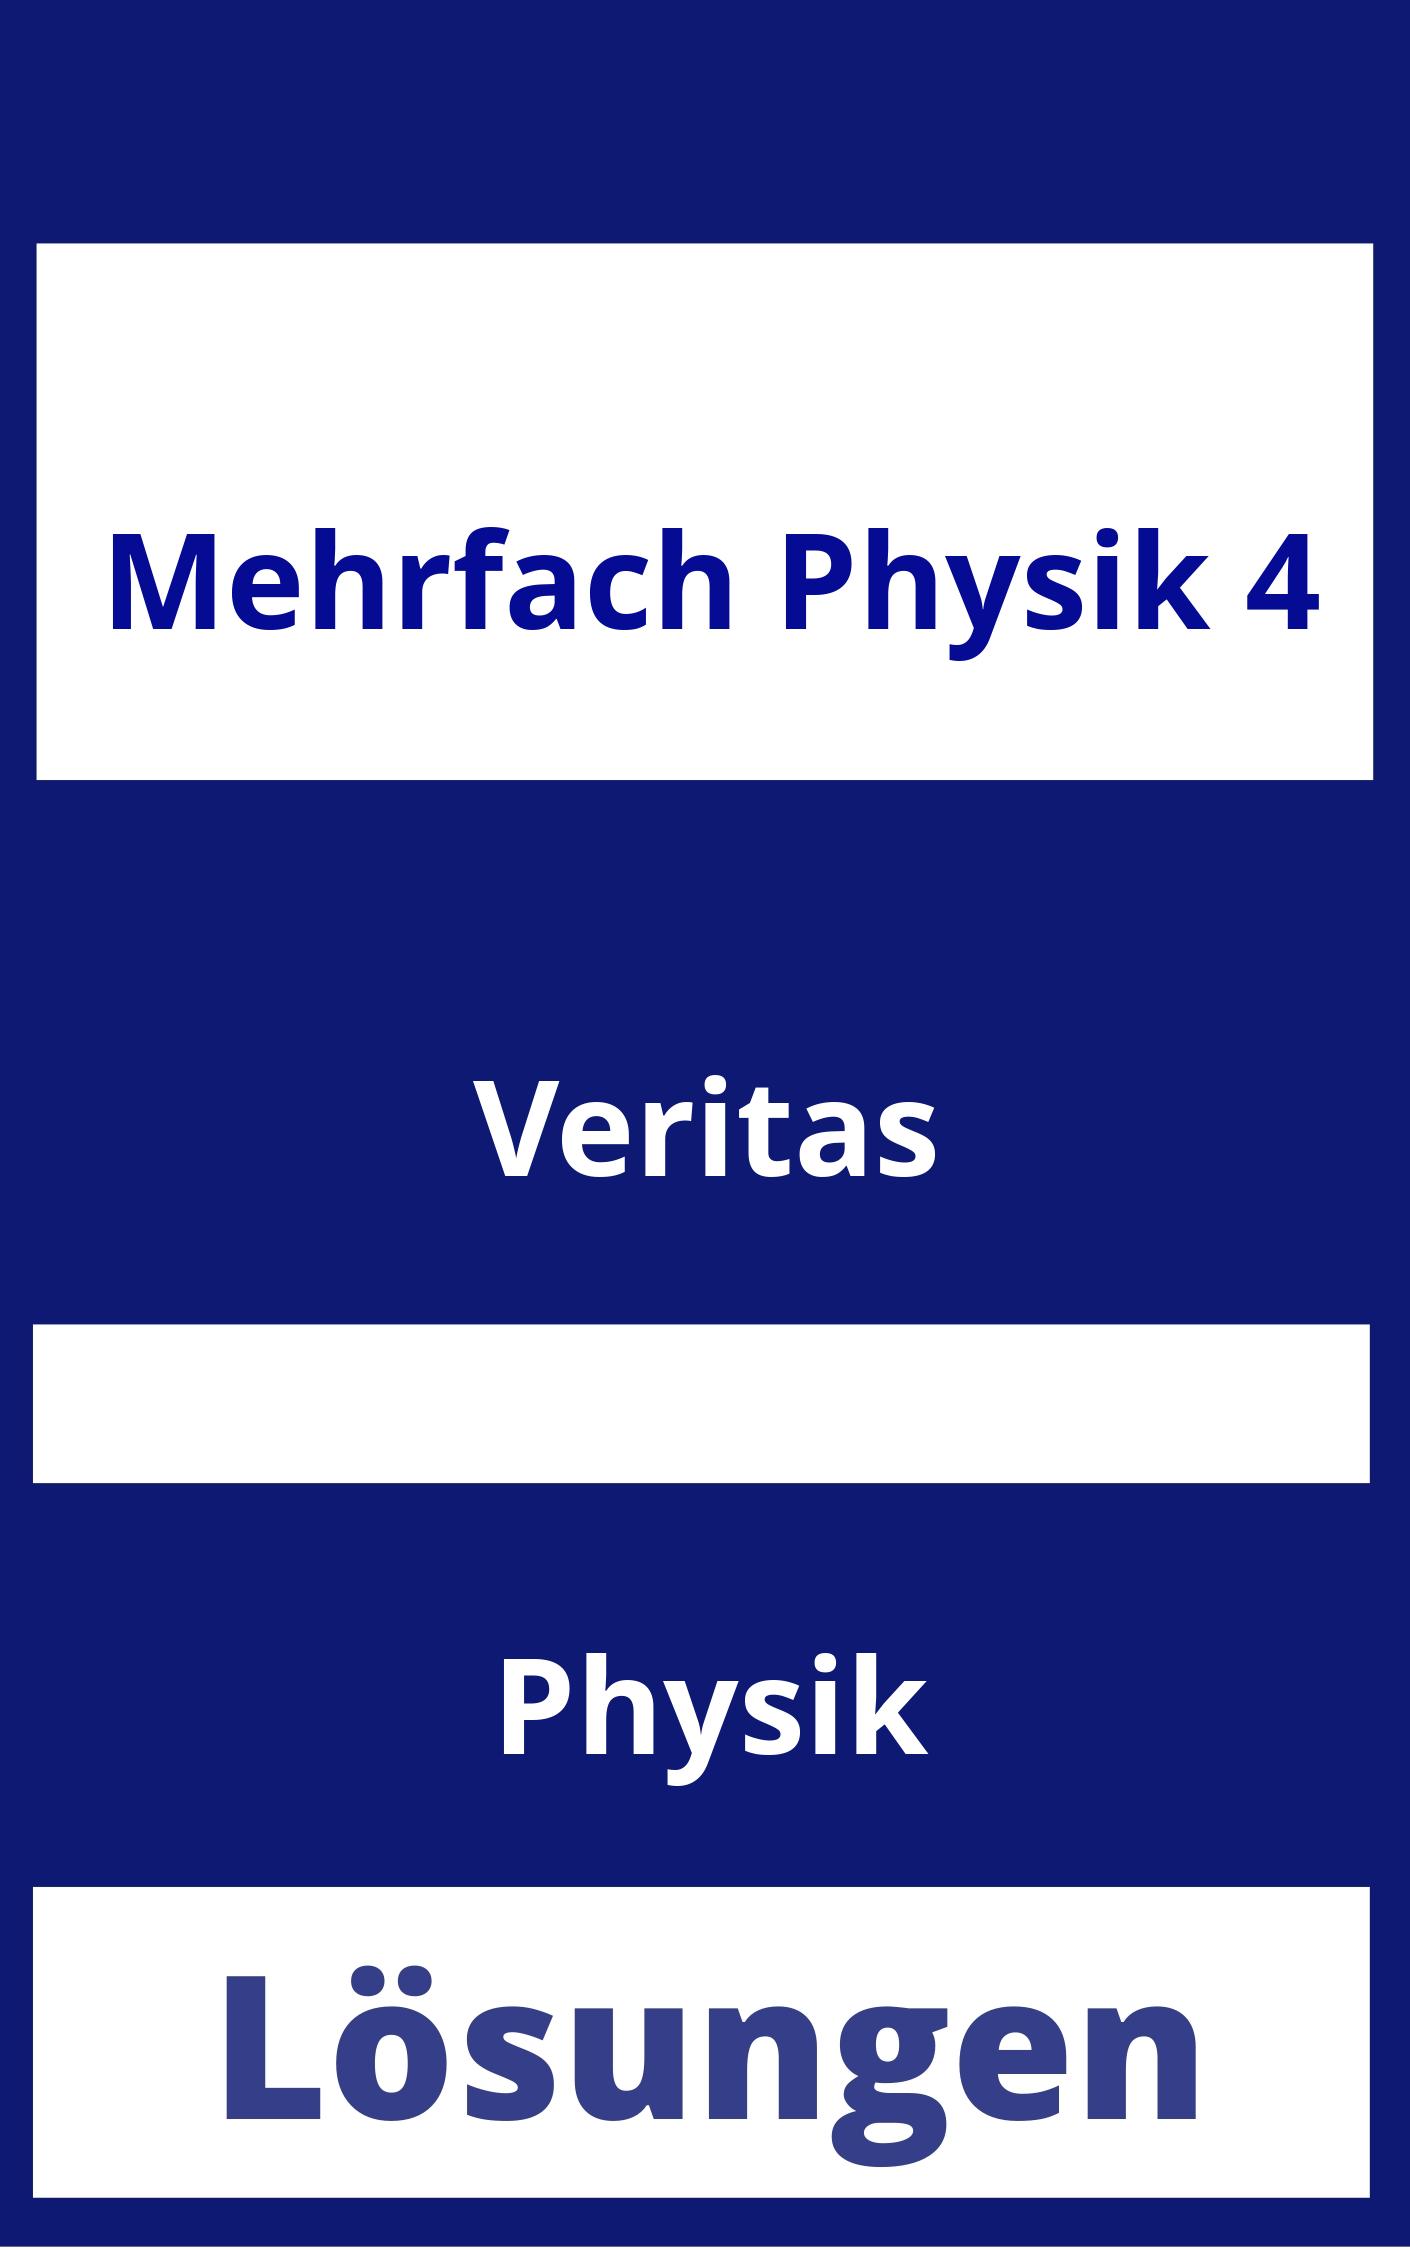 MEHRfach Physik 4 Lösungen PDF